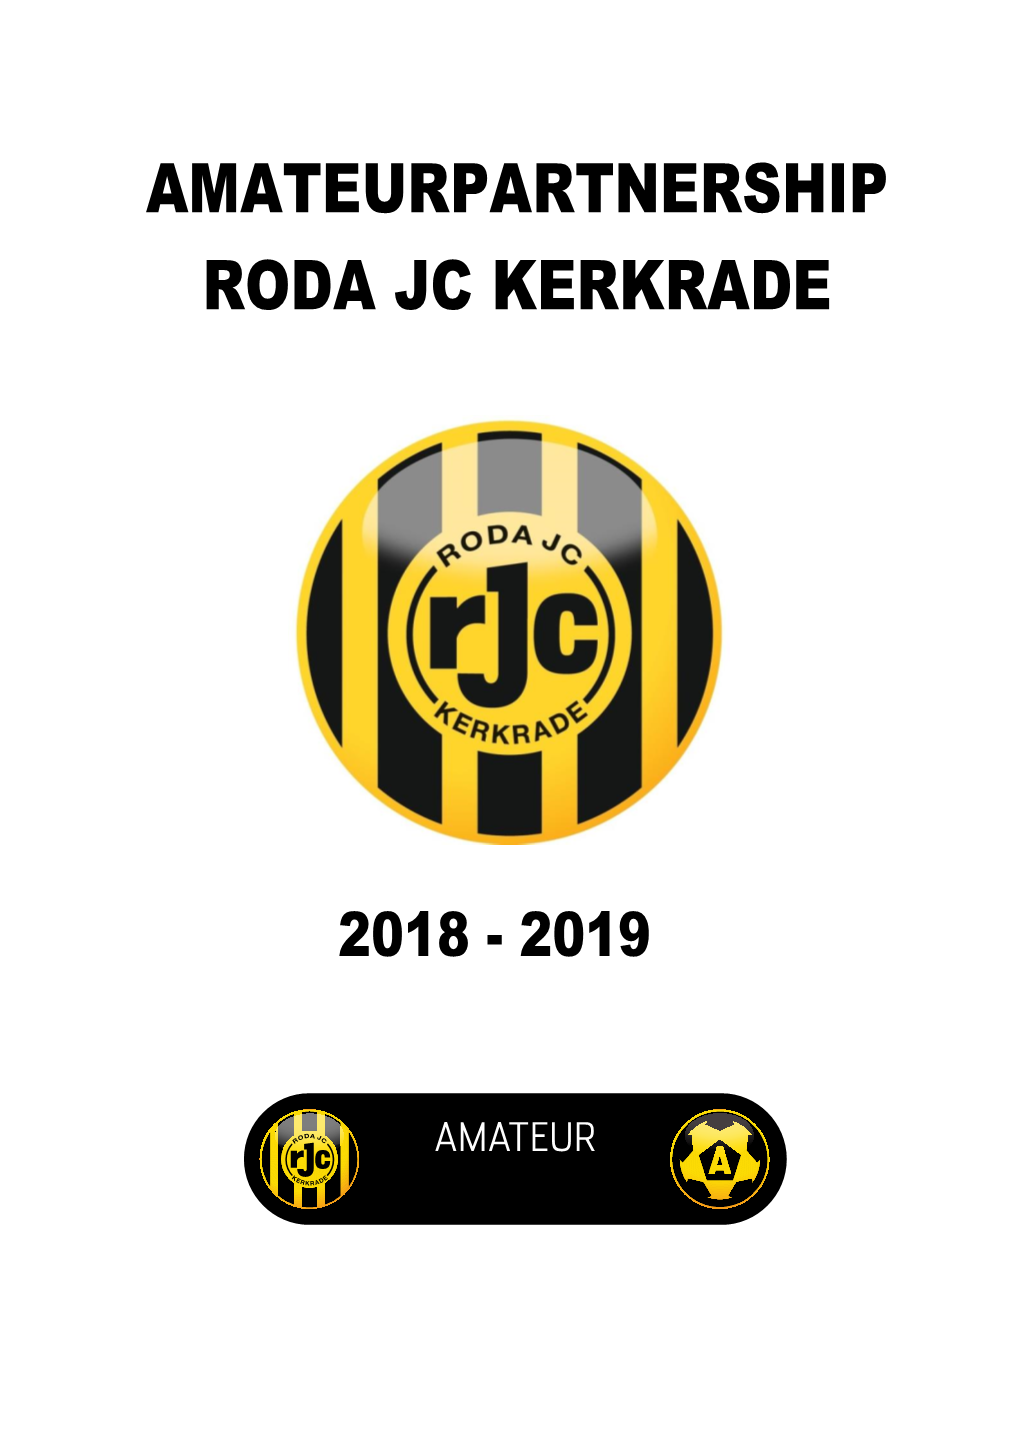 Amateurpartnership Roda Jc Kerkrade